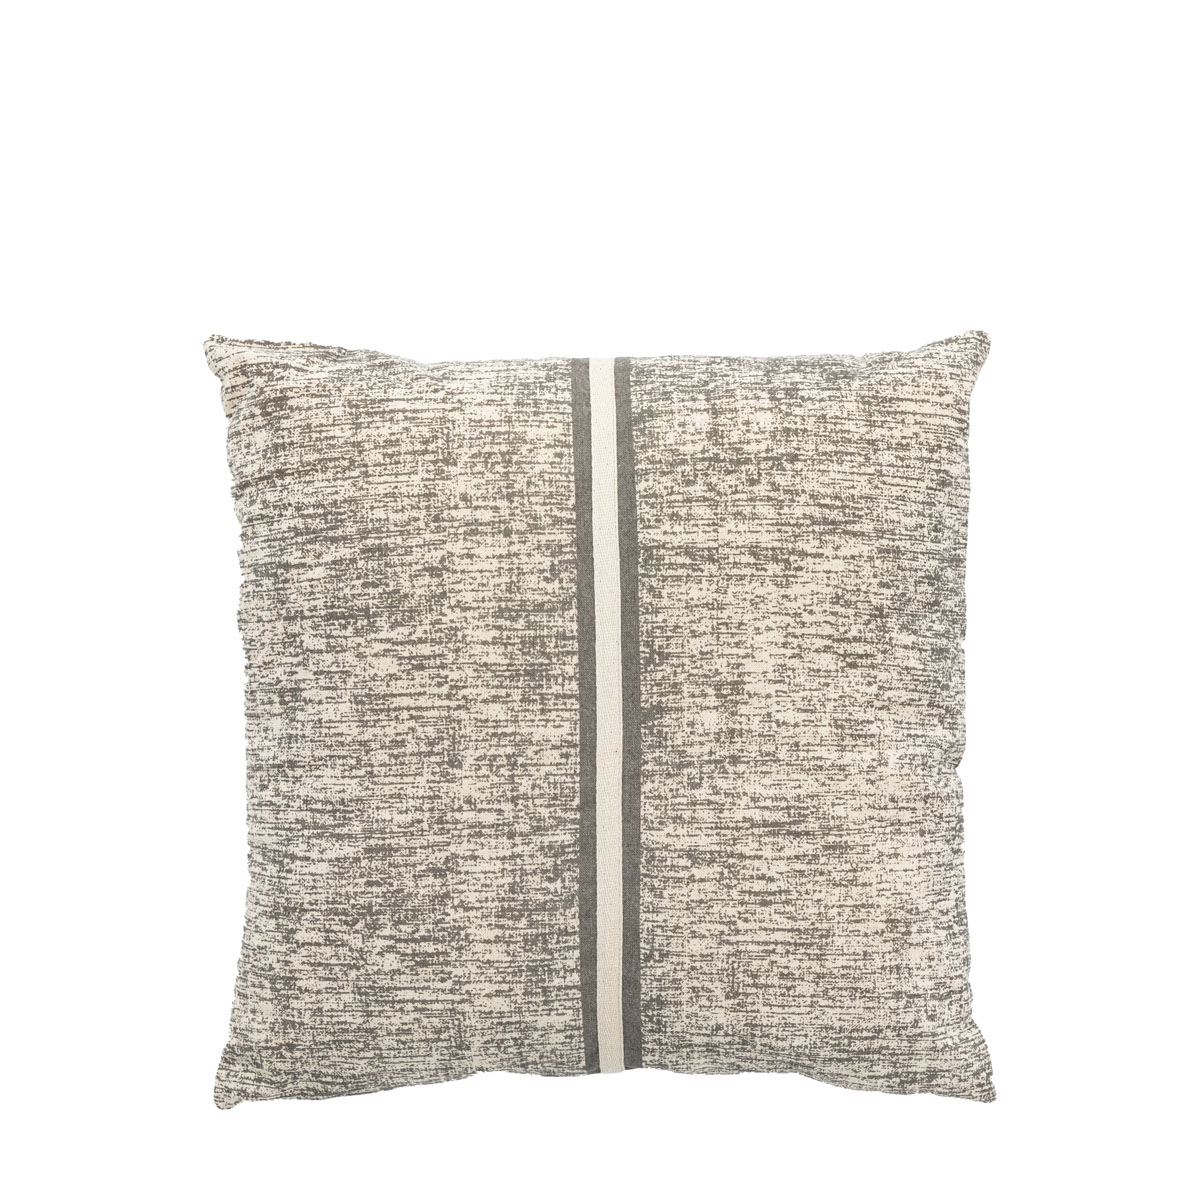 Gabbro Grey Cushion Cover 450x450mm